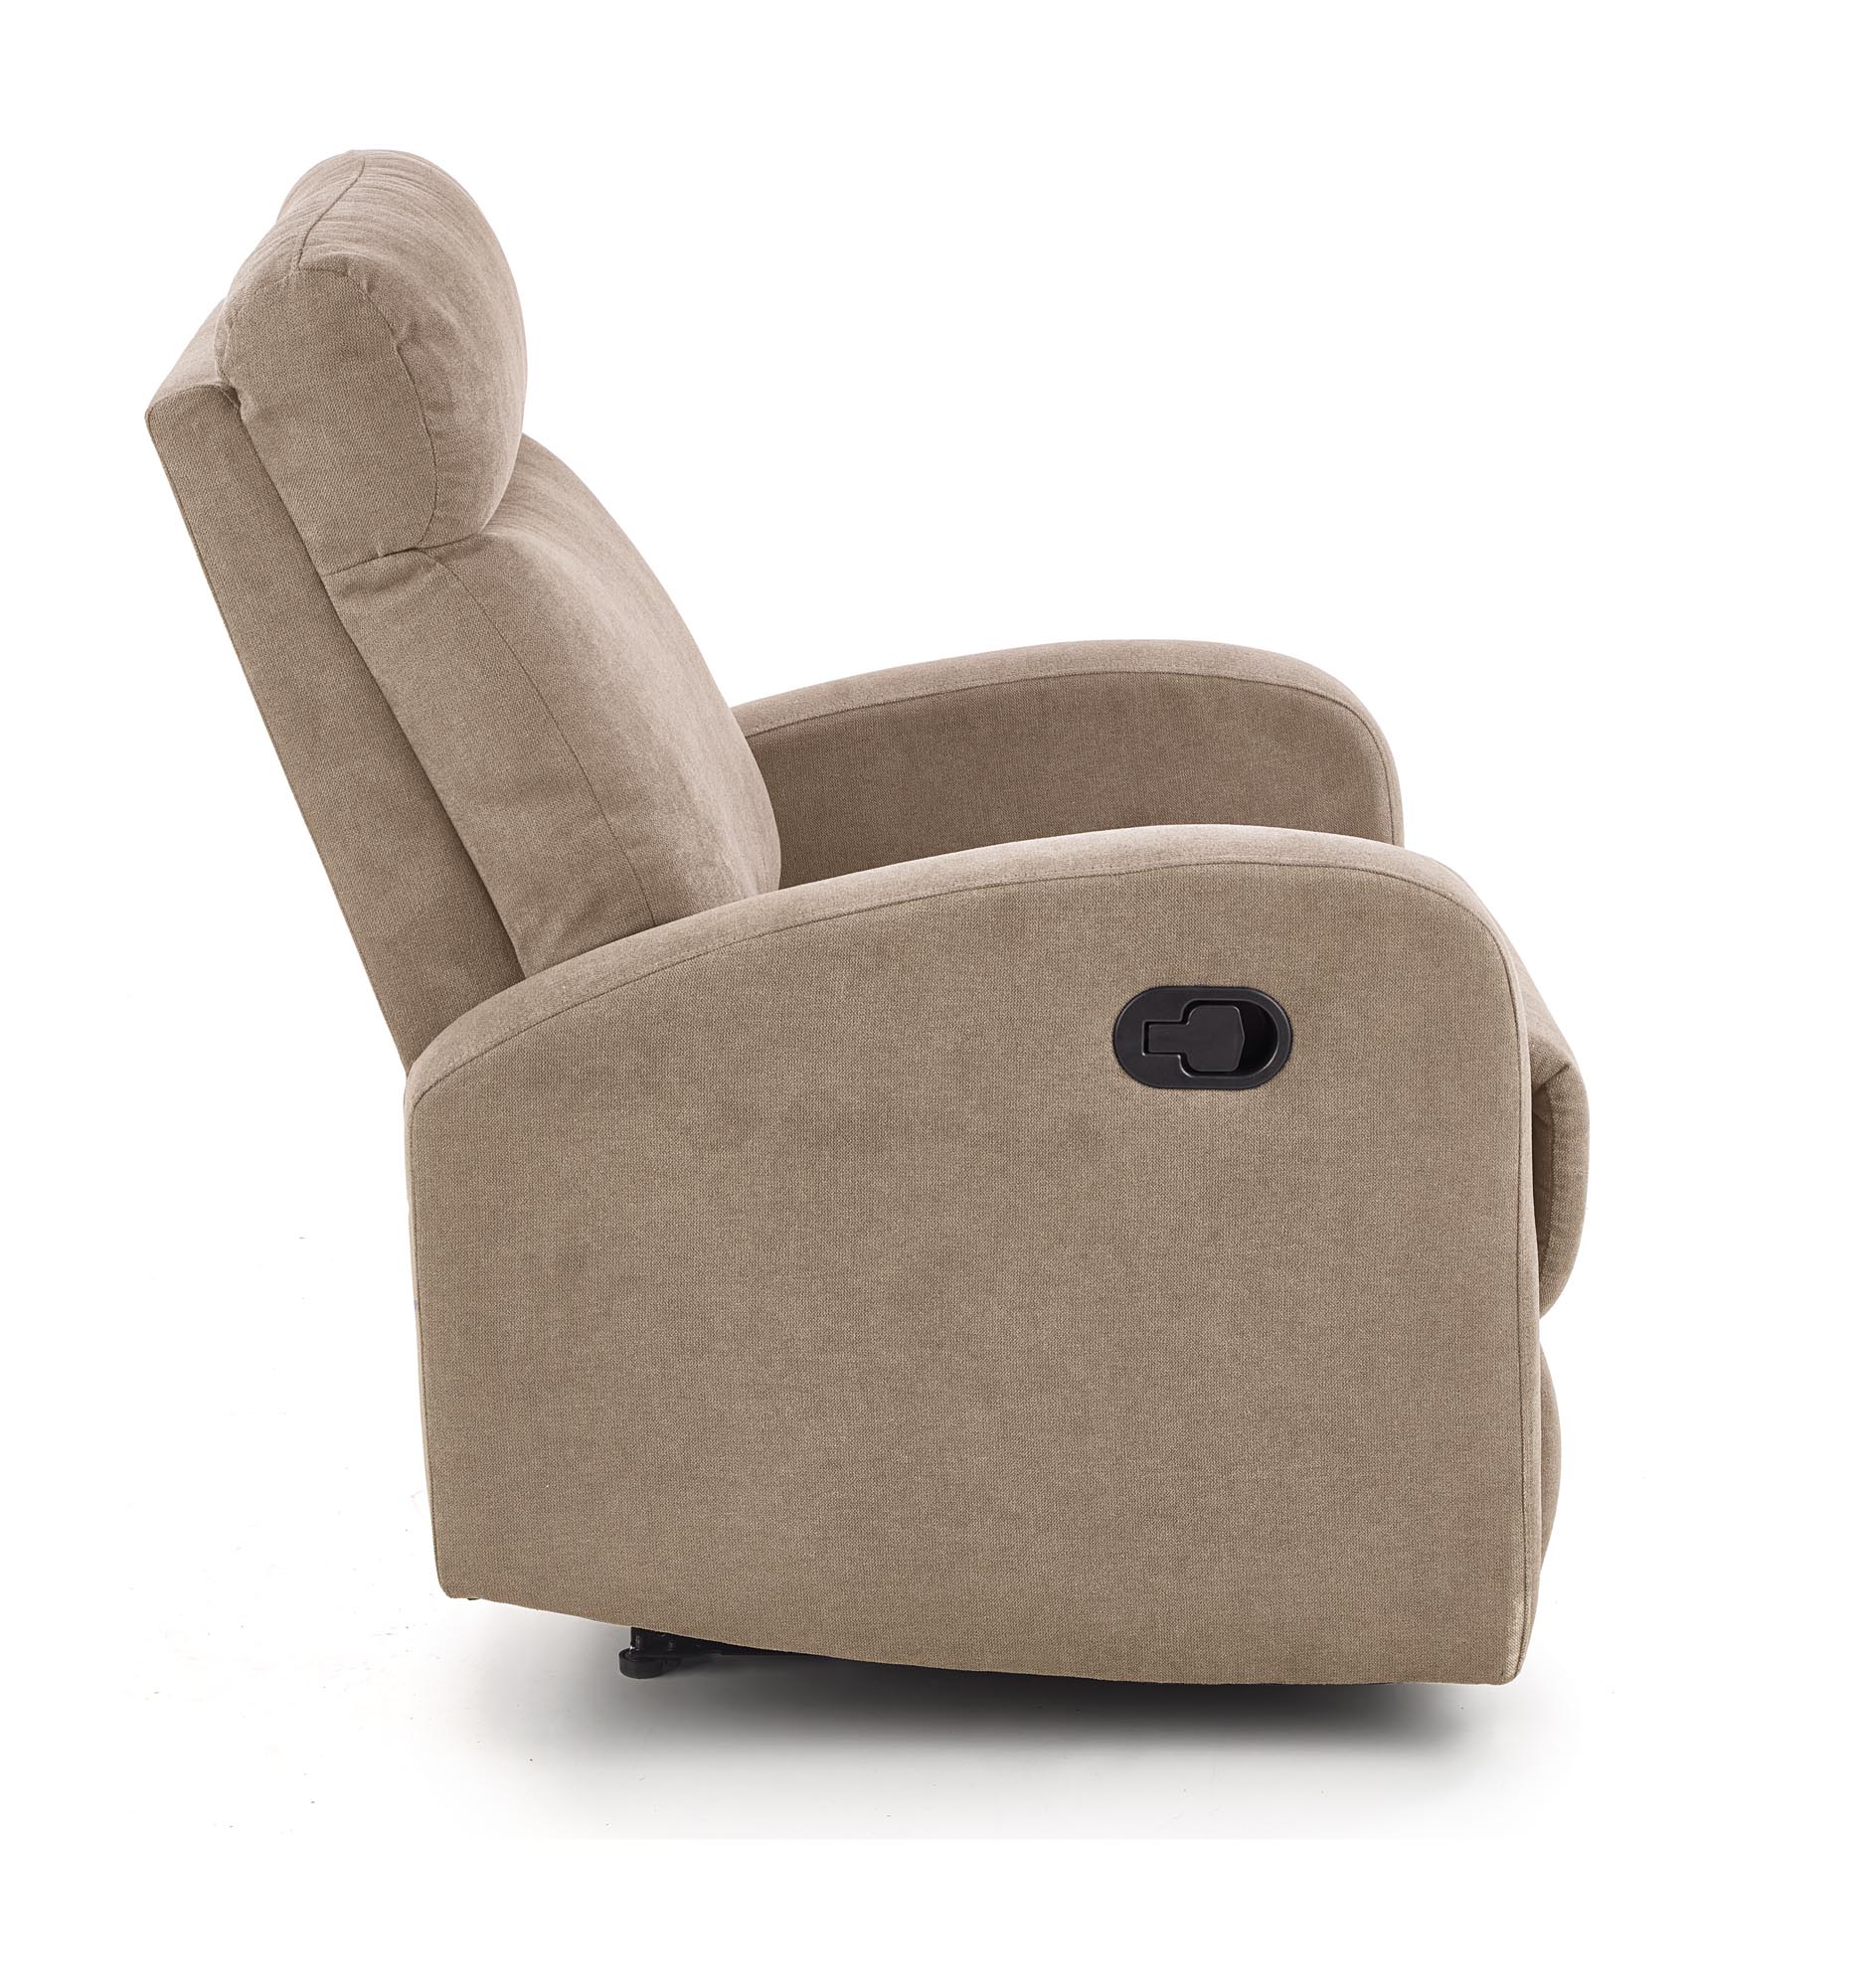 Rozkładany fotel wypoczynkowy Oslo 1S - beżowy rozkładany fotel wypoczynkowy oslo 1s - beżowy